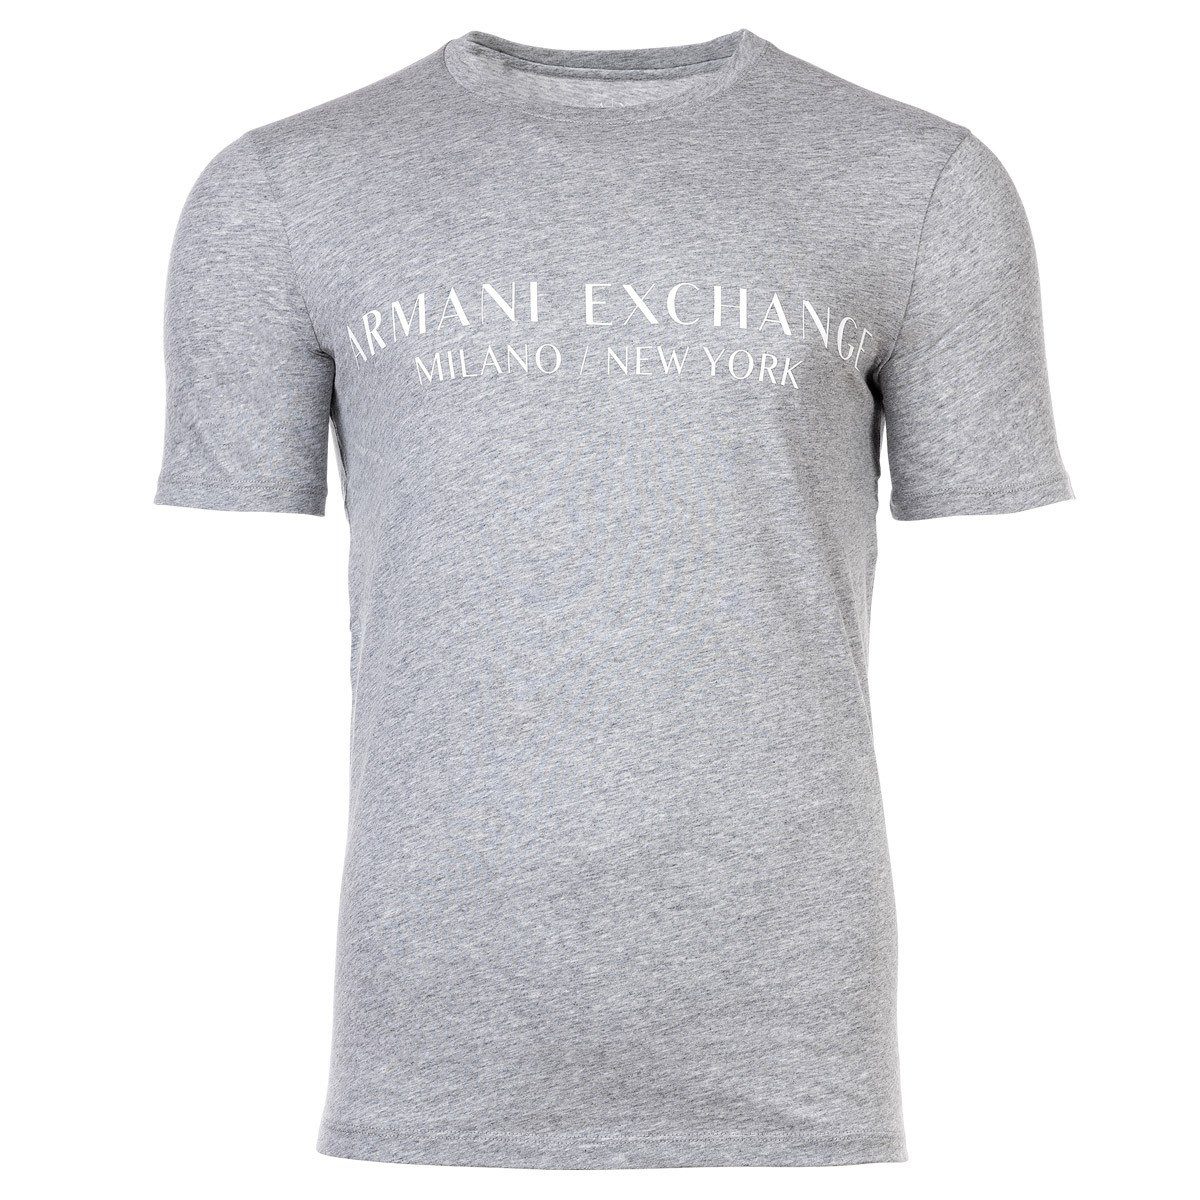 ARMANI EXCHANGE T-Shirt Herren T-Shirt - Schriftzug, Rundhals, Cotton Grau | T-Shirts